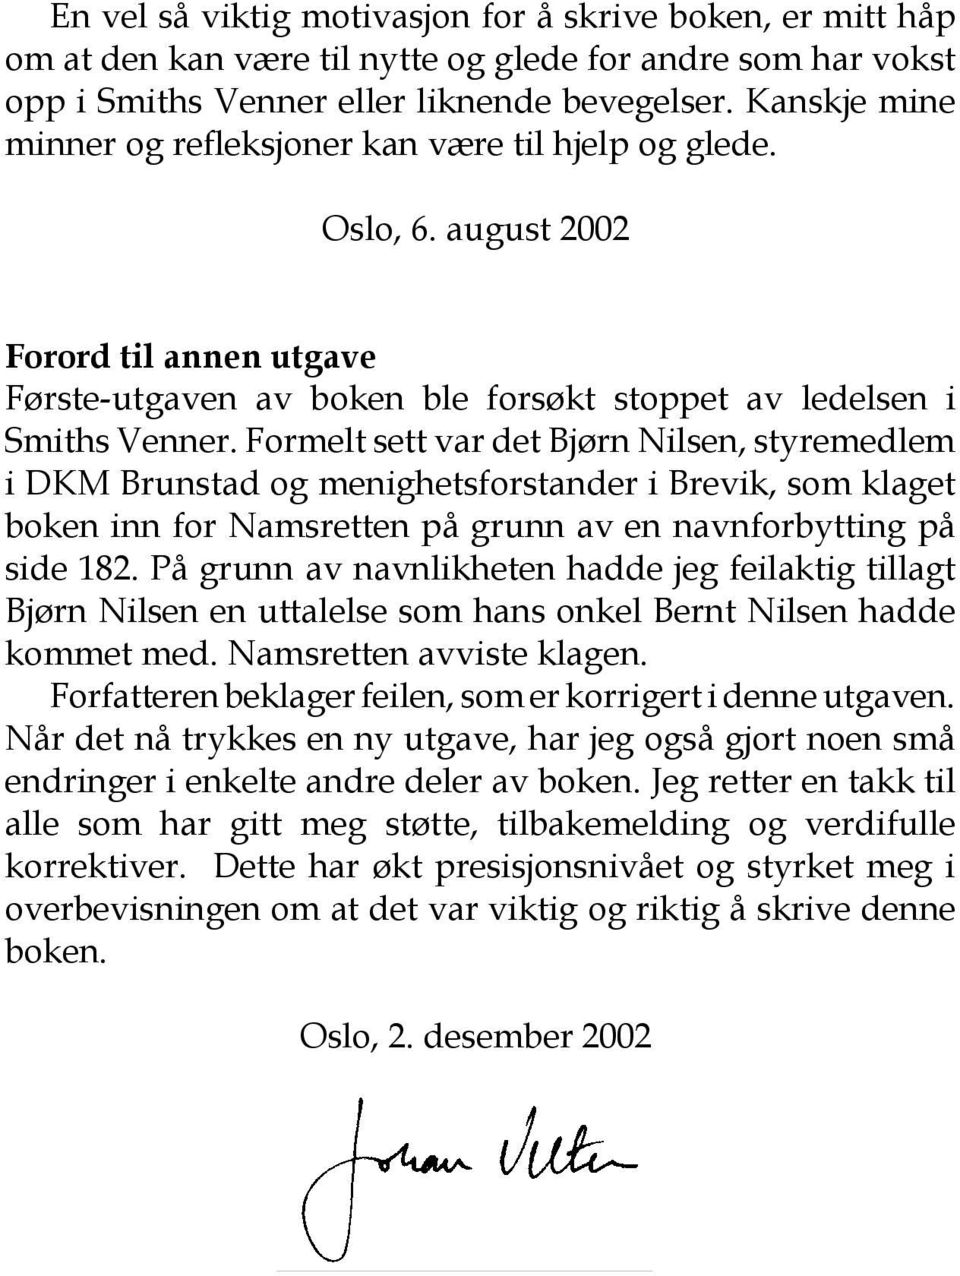 Formelt sett var det Bjørn Nilsen, styremedlem i DKM Brunstad og menighetsforstander i Brevik, som klaget boken inn for Namsretten på grunn av en navnforbytting på side 182.